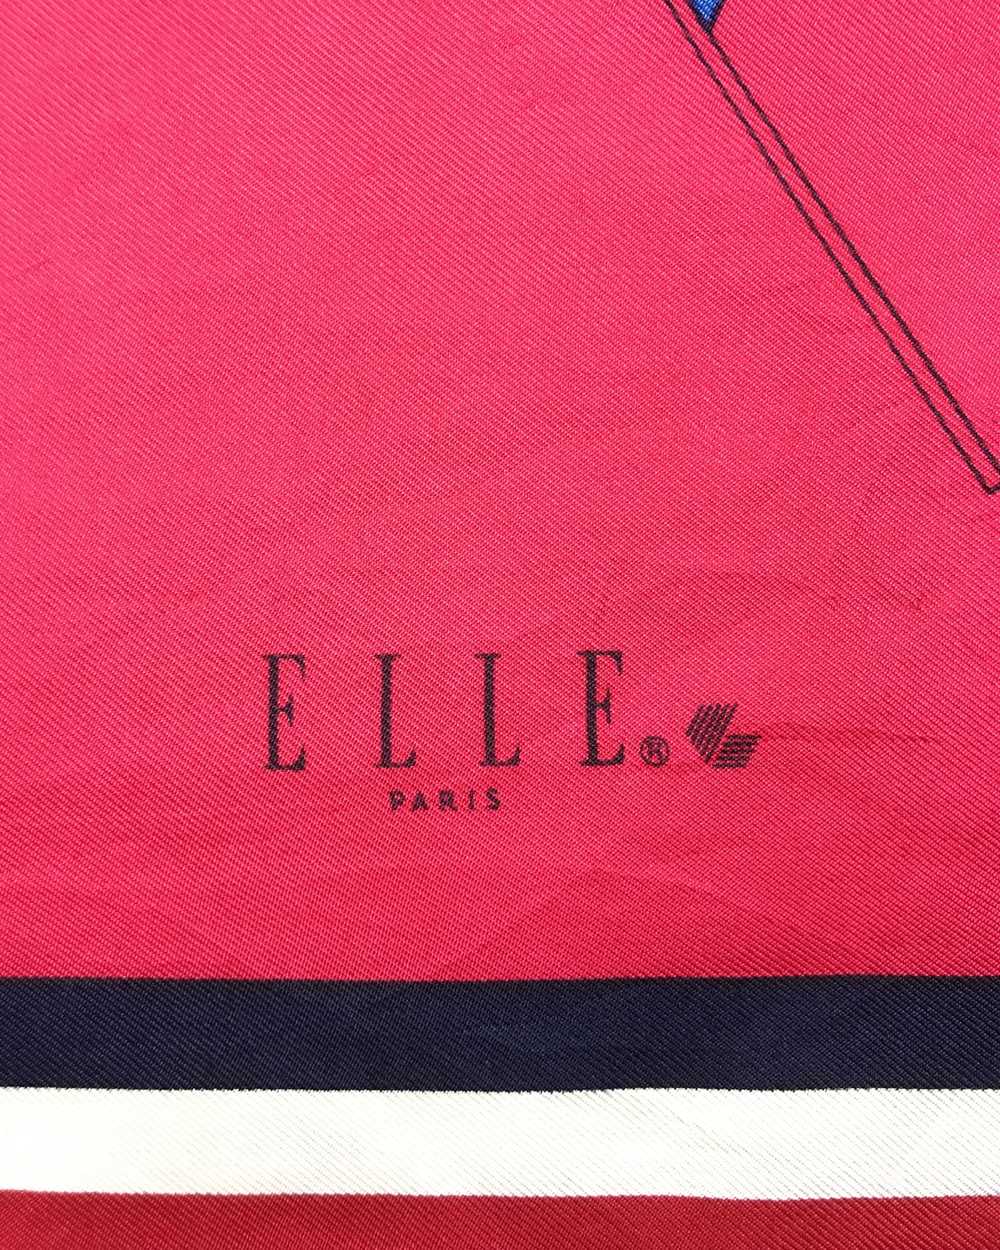 Designer × Other × Vintage Elle silk scarf multic… - image 10